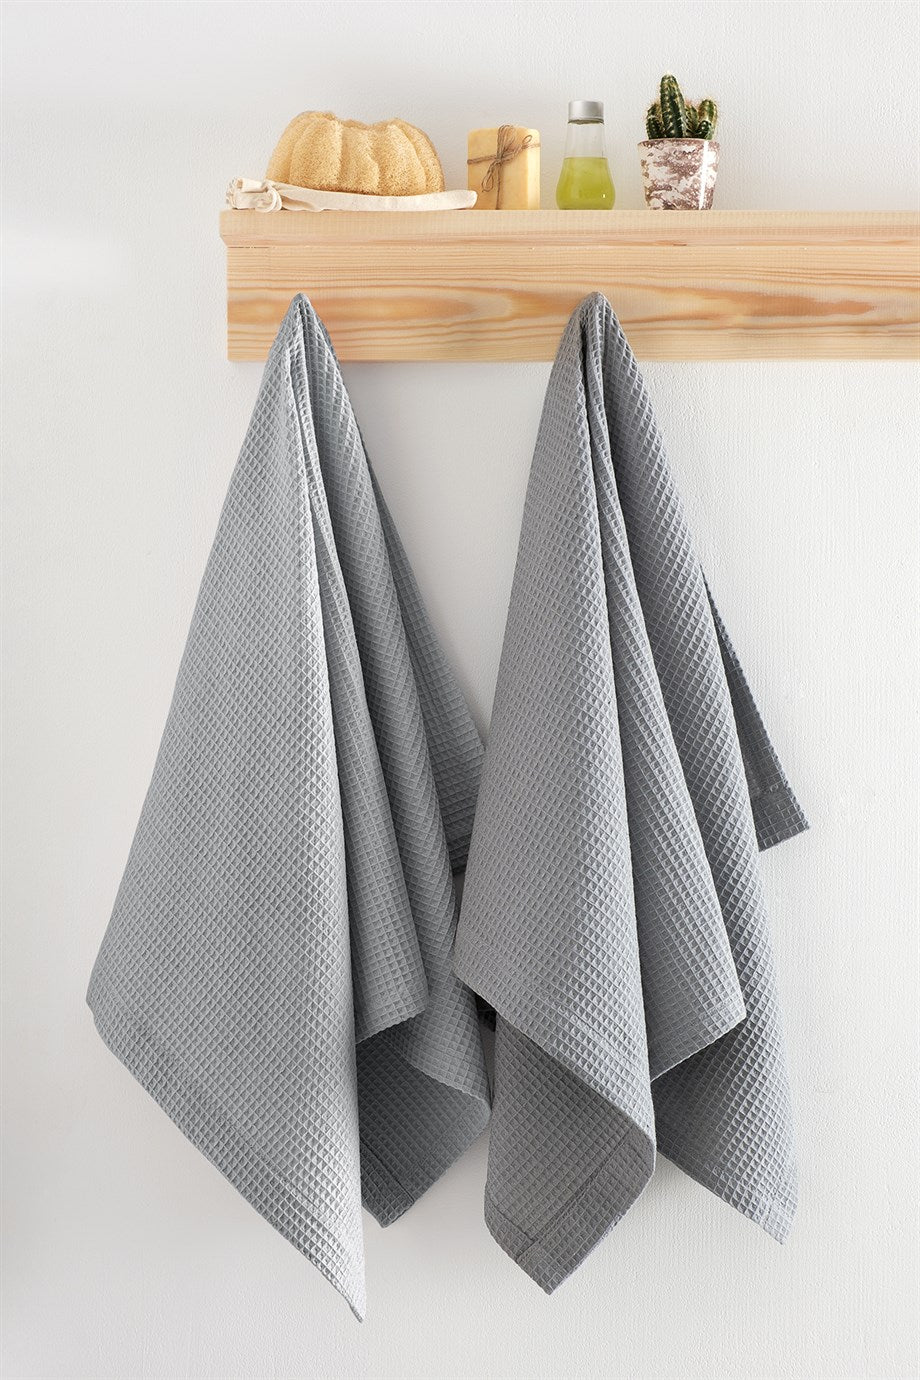 DENIZLI CONCEPT Soho Pique Towel Set Gray